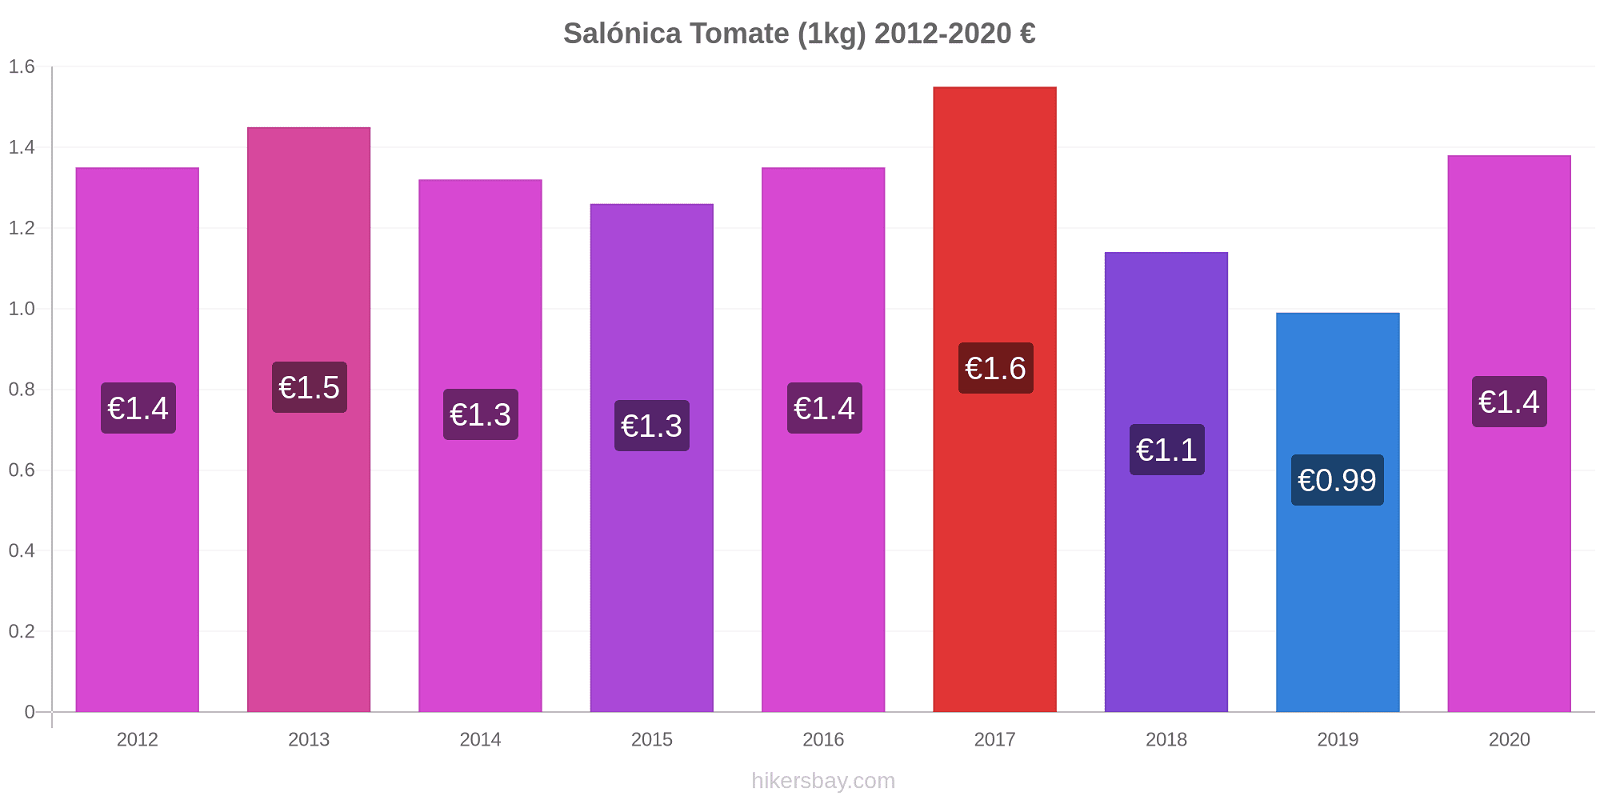 Salónica cambios de precios Tomate (1kg) hikersbay.com